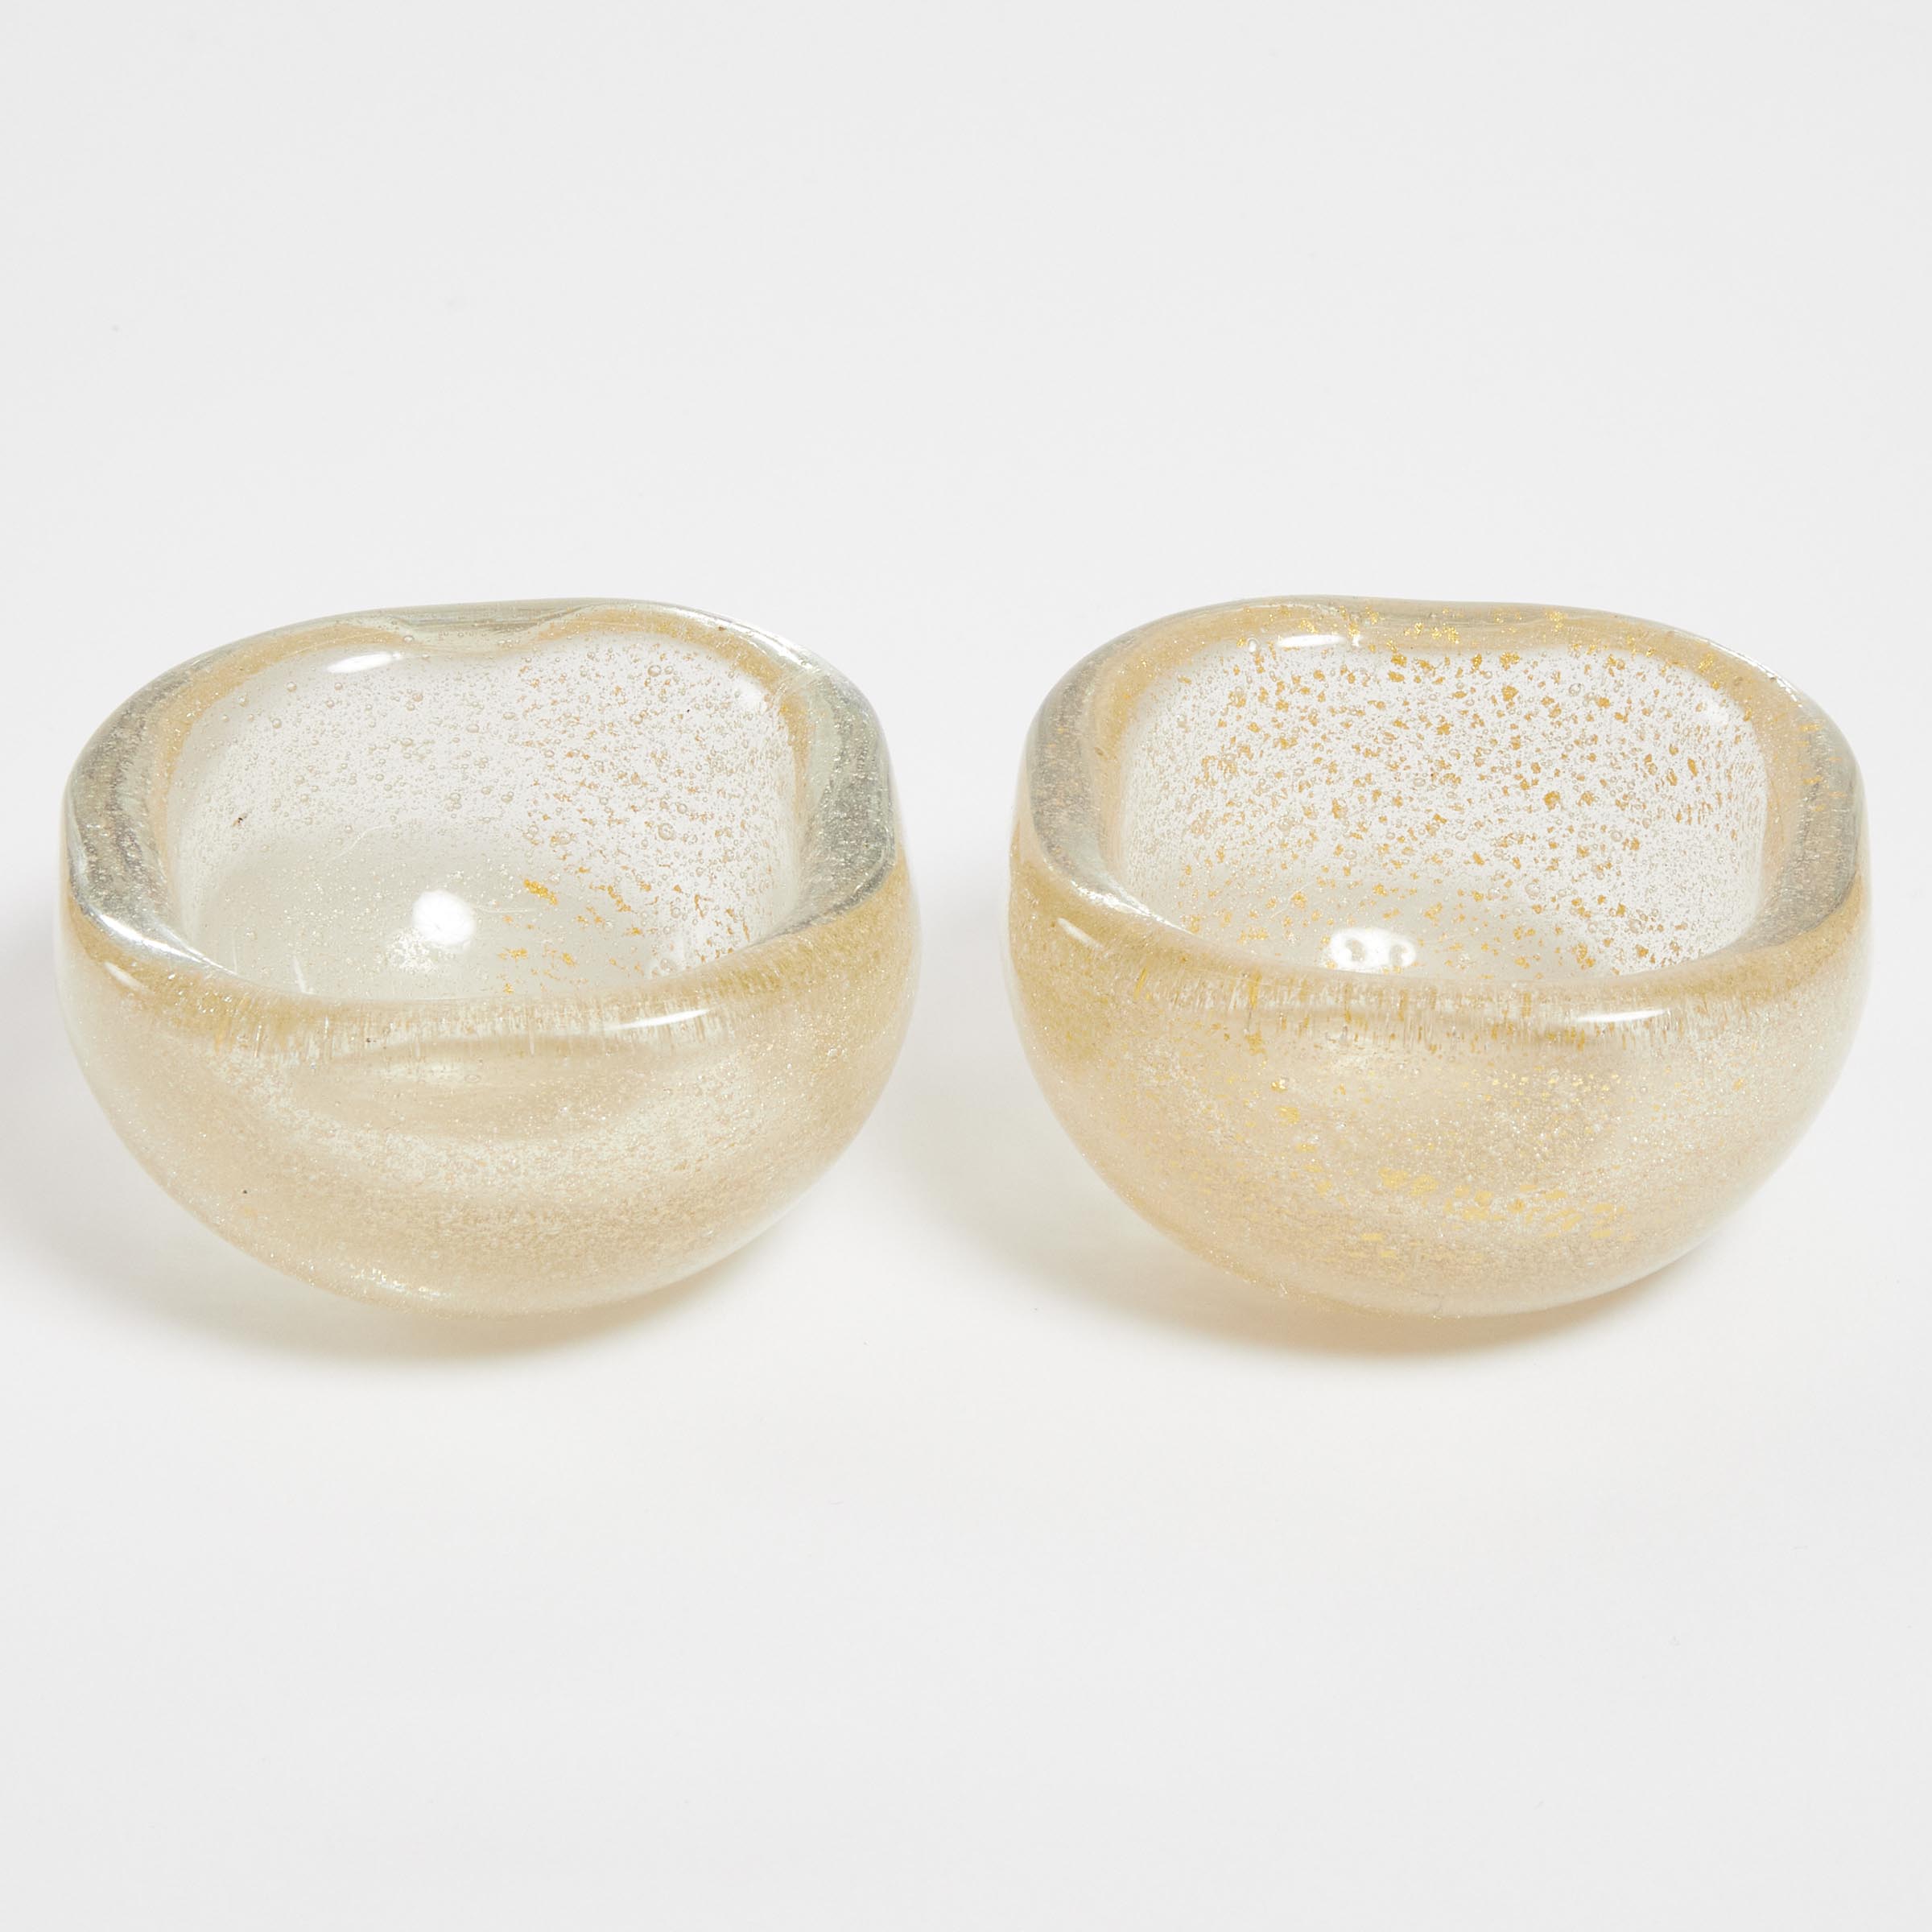 Two Venini 'Avventurina' Small Glass Bowls, mid-20th century, diameter 2.6 in — 6.7 cm (2 Pieces)